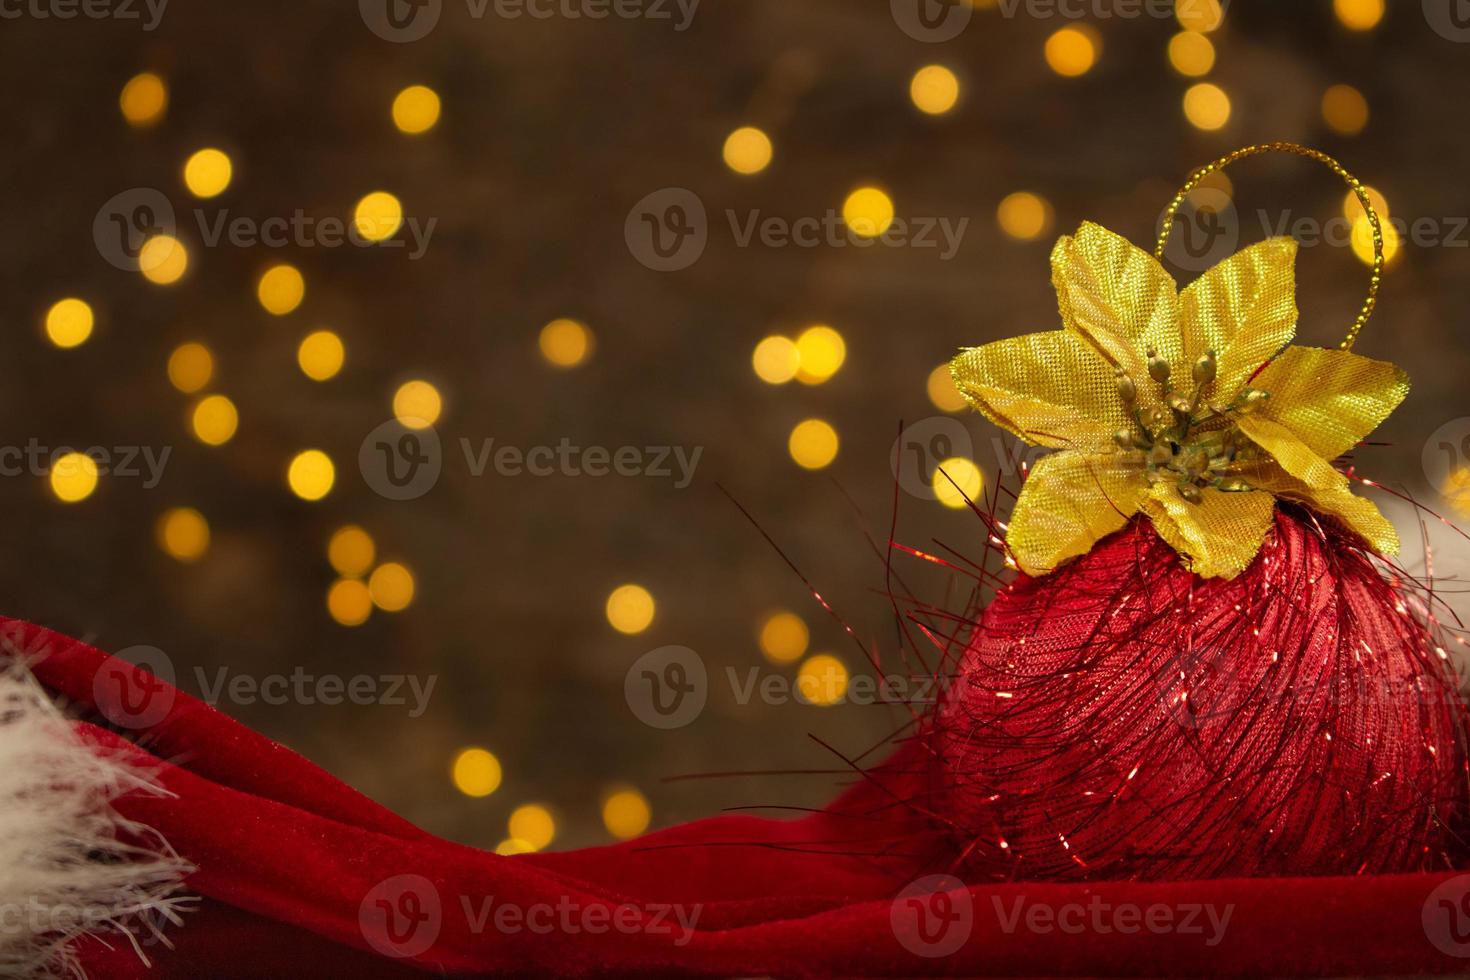 bola roja de navidad con flor dorada y sombrero rojo de santa claus con luces de año nuevo en la parte posterior. fondo borroso postal de vacaciones foto